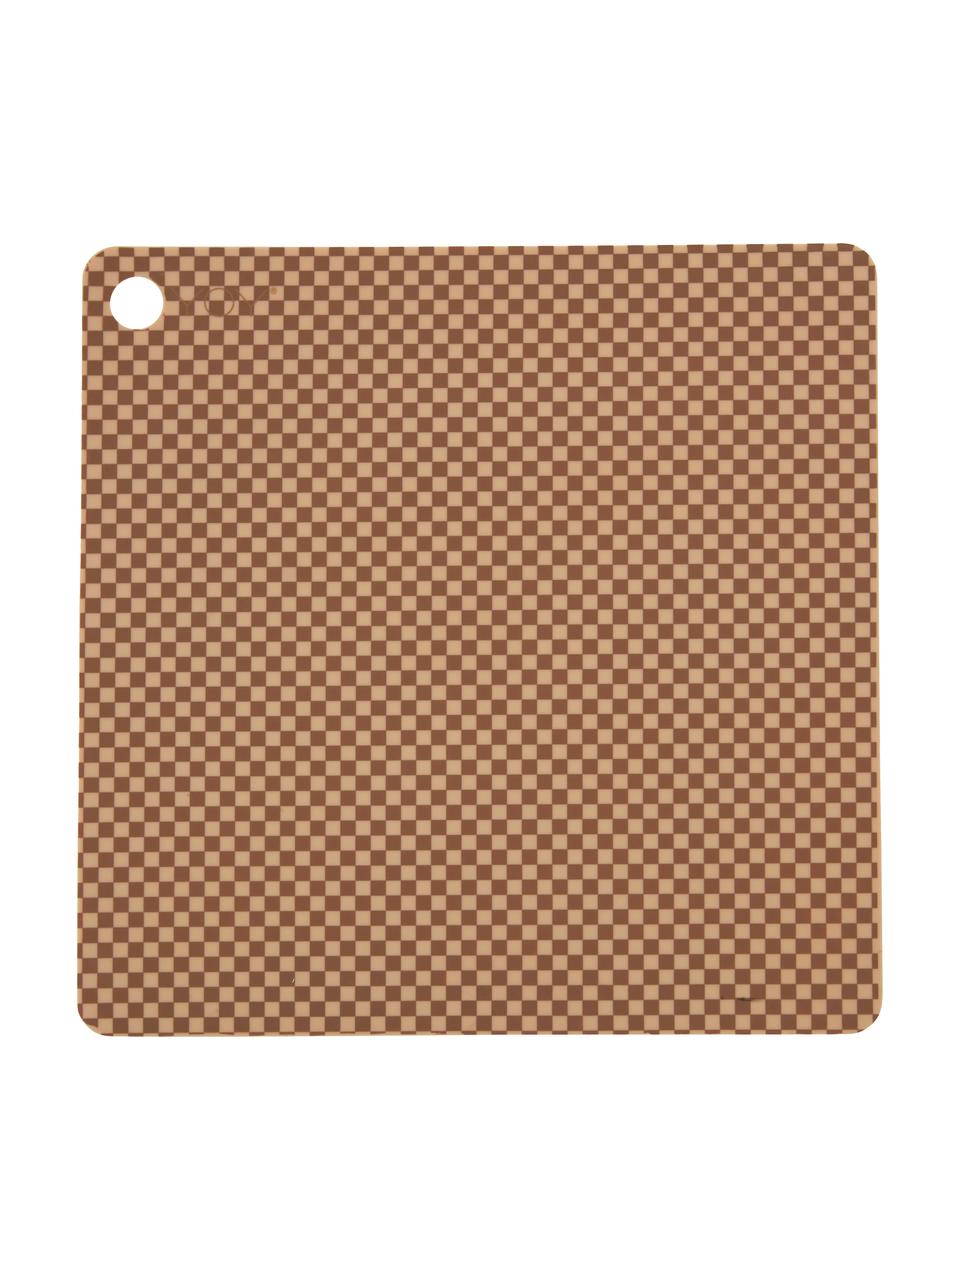 Set de table Checker, 2 pièces, Silicone, Caramel, beige, larg. 38 x long. 38 cm